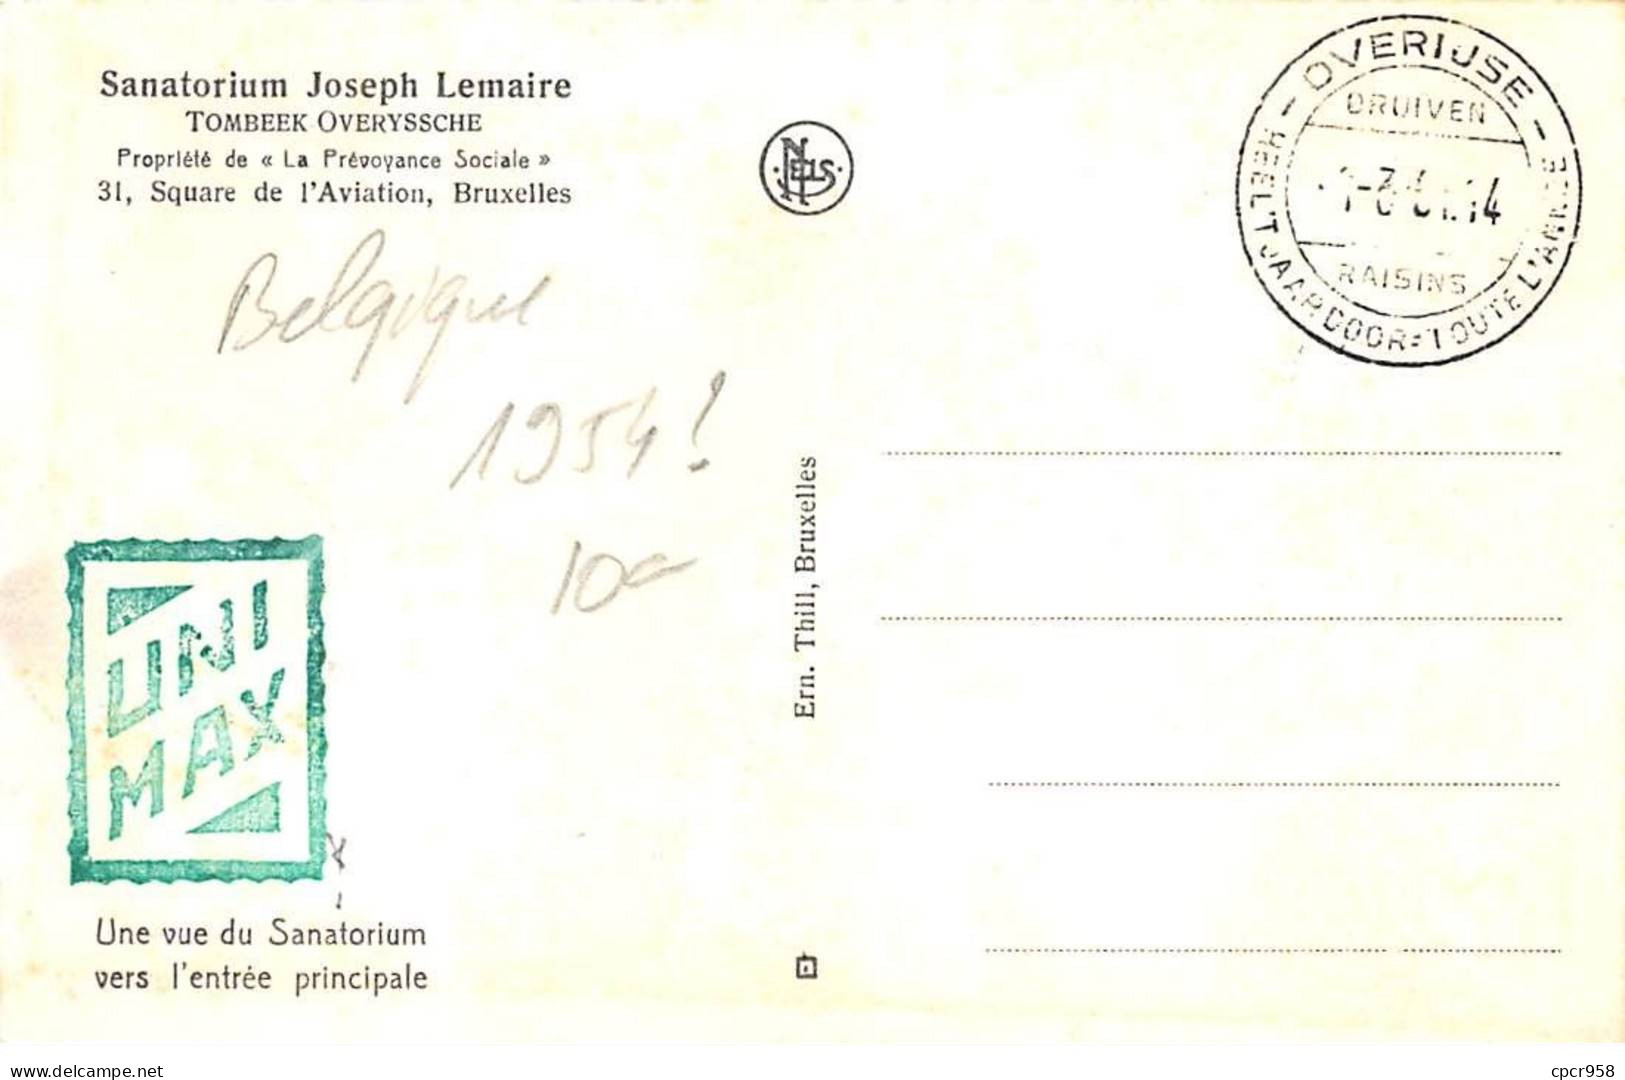 BELGIQUE.Carte Maximum.AM14093.1954.Cachet Overiuse.Vue Du Sanatorium Joseph Lemaire.Prévoyance Sociale - Oblitérés